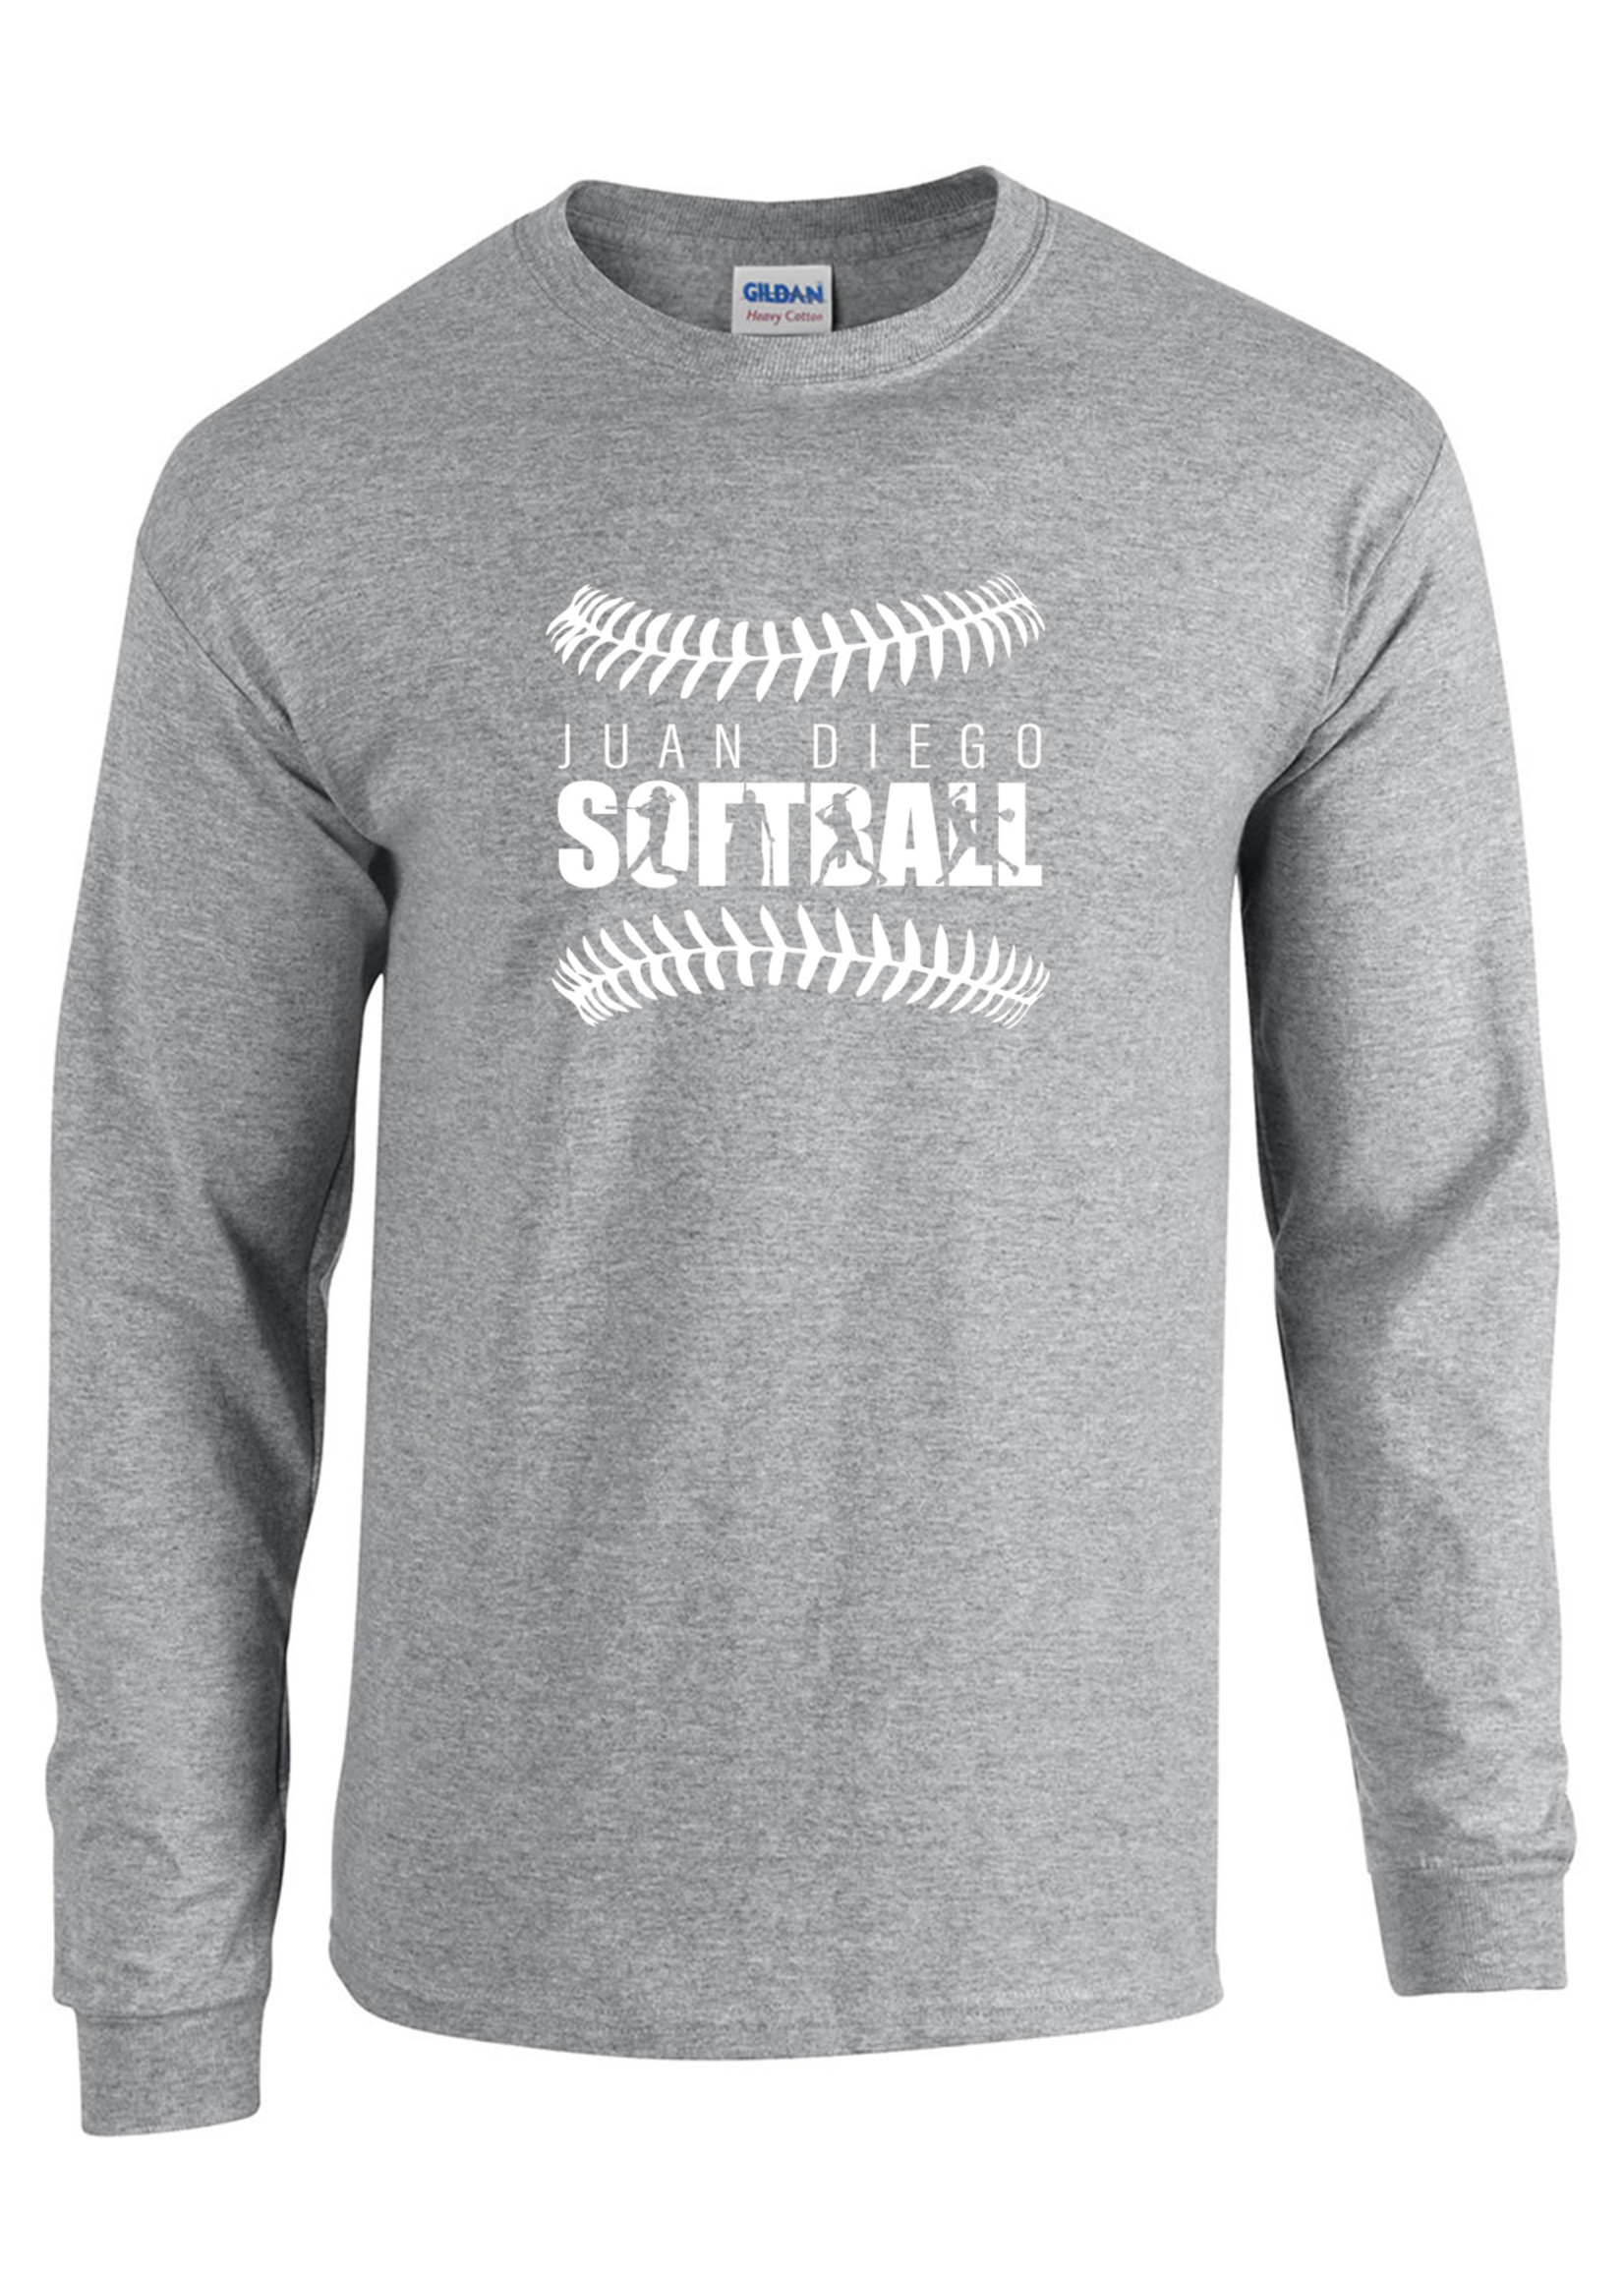 NON-UNIFORM JD Softball Spirit Long Sleeve T-Shirt, new design